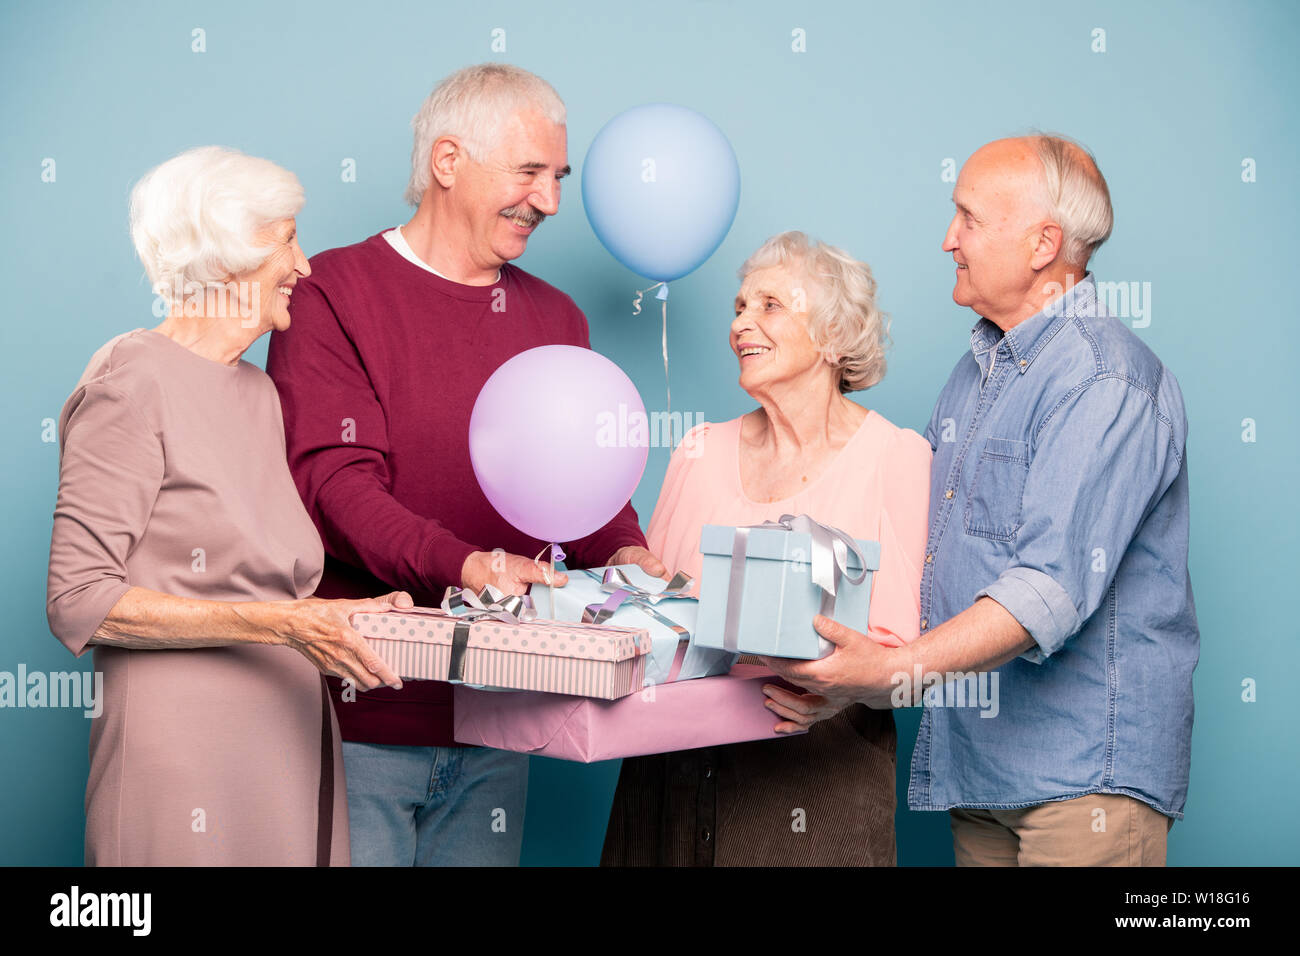 Fröhliche Gesellschaft von freundlichen Rentner mit Ballons und giftboxes Urlaub oder ein Jubiläum feiern. Stockfoto